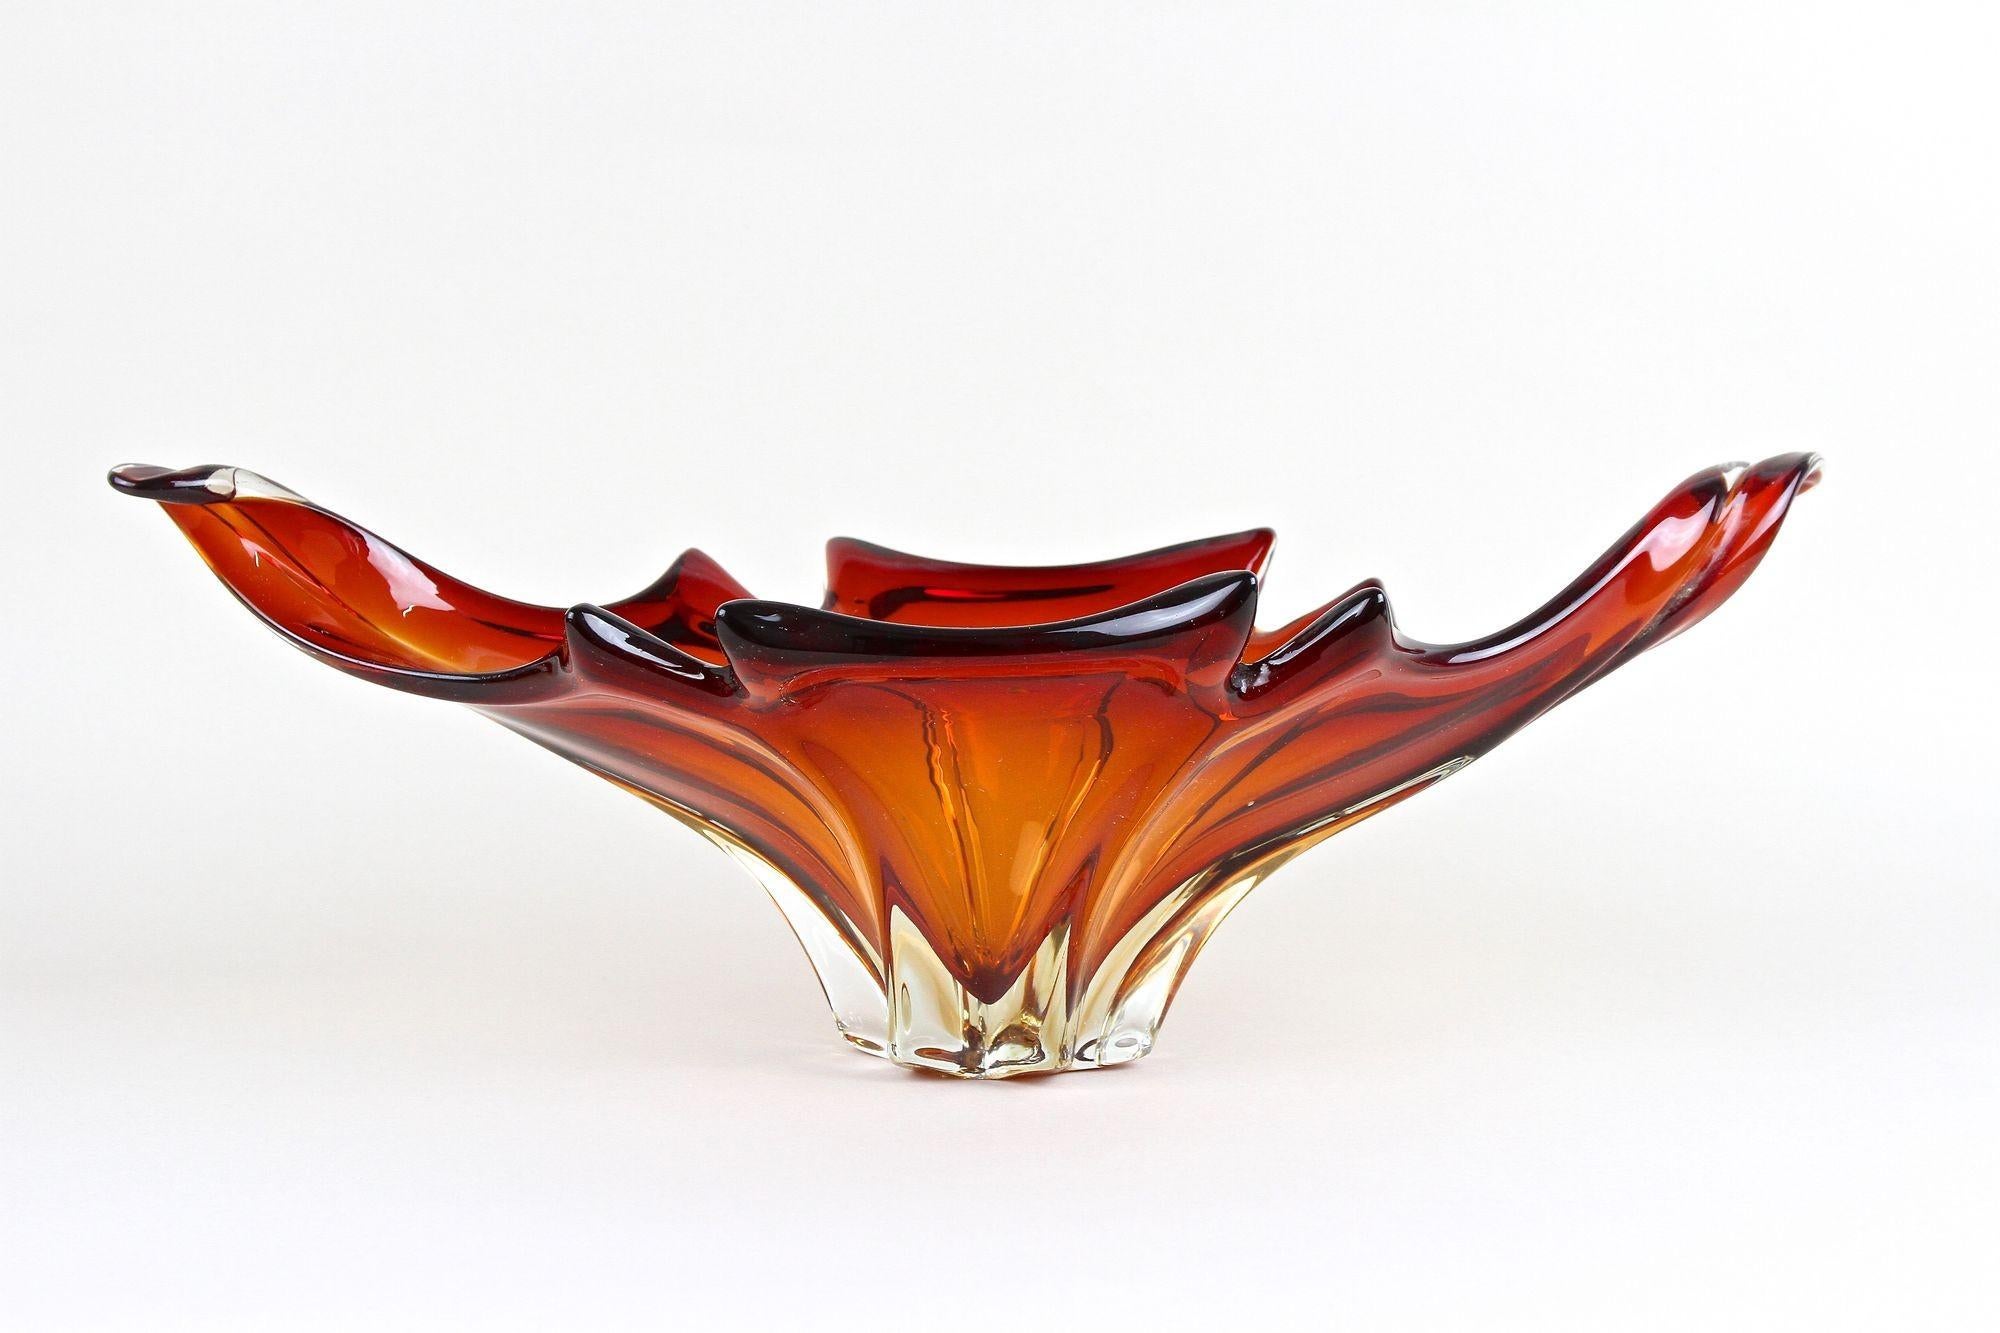 Murano-Glasschale aus der Jahrhundertmitte - Rot/Orange-Töne, Italien, um 1960/70 (Muranoglas)